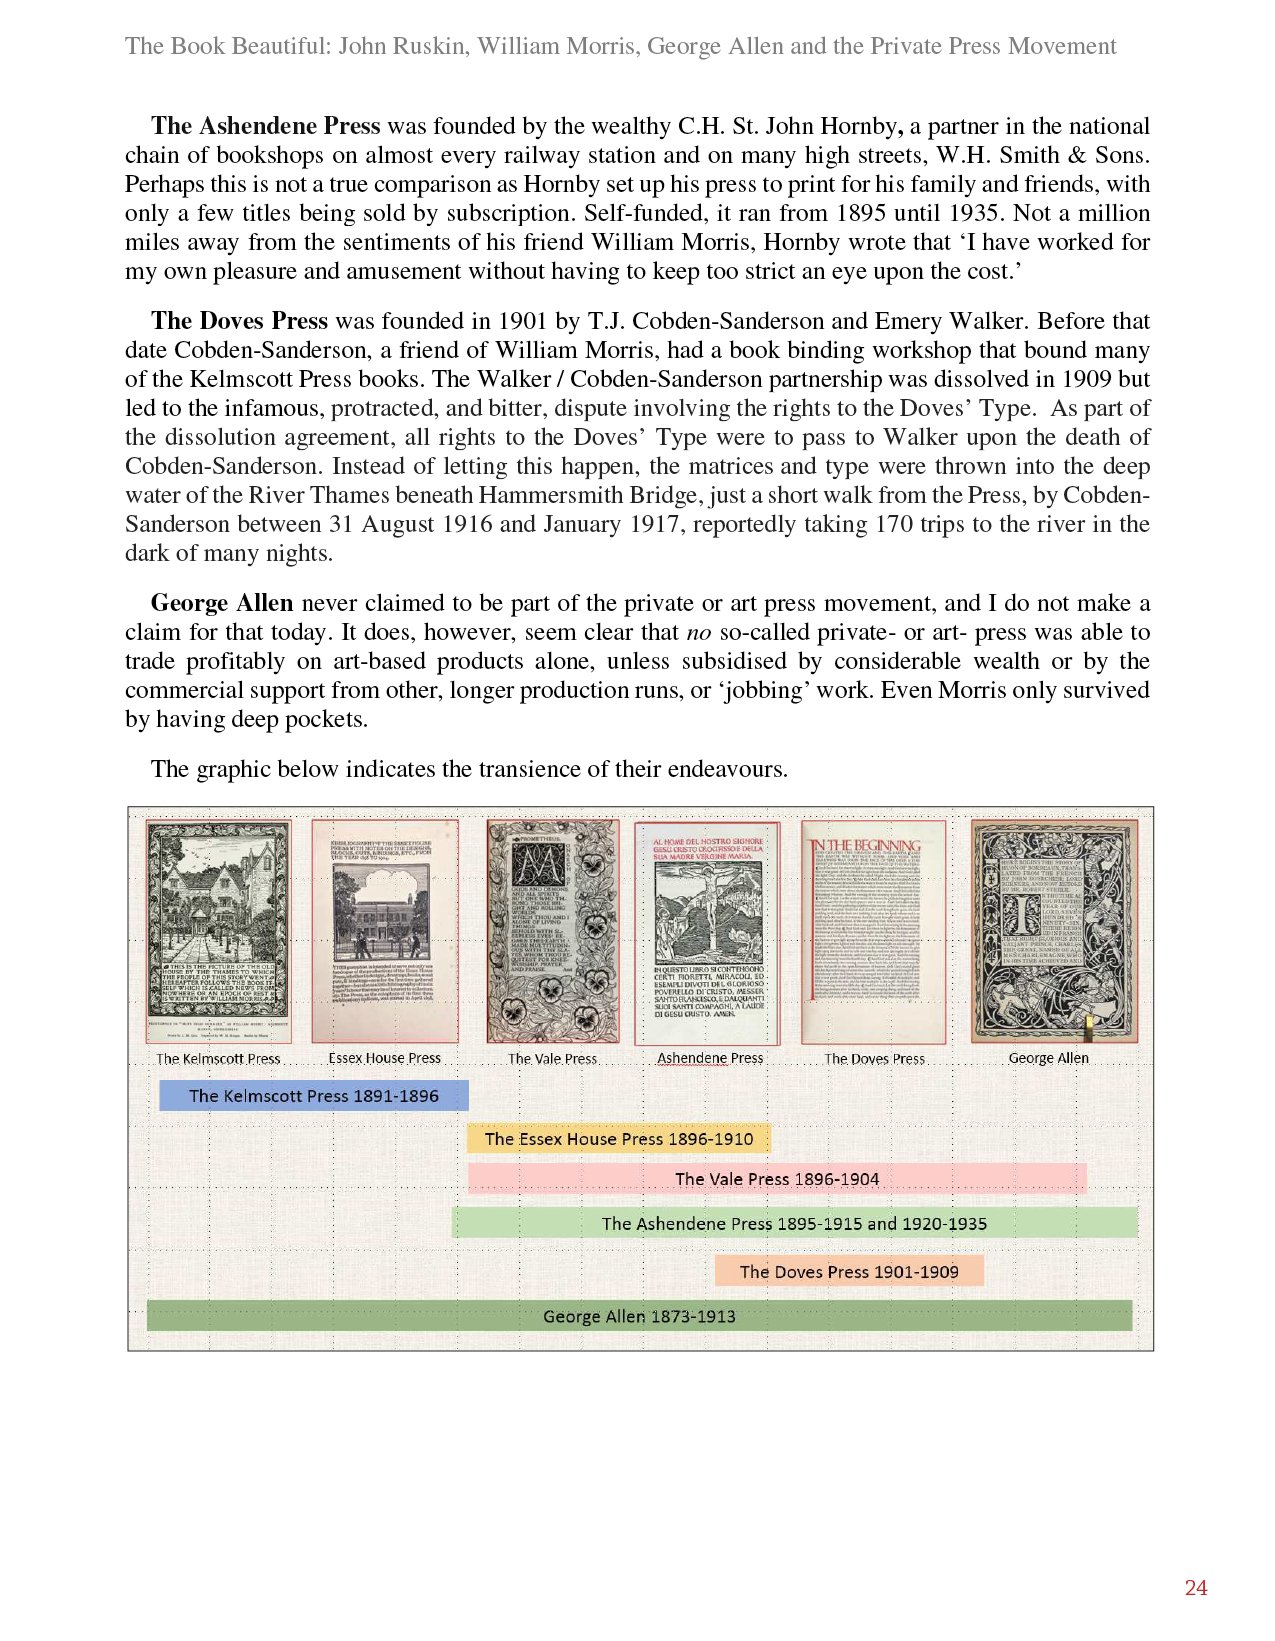 ruskin newsletter 1624.jpg